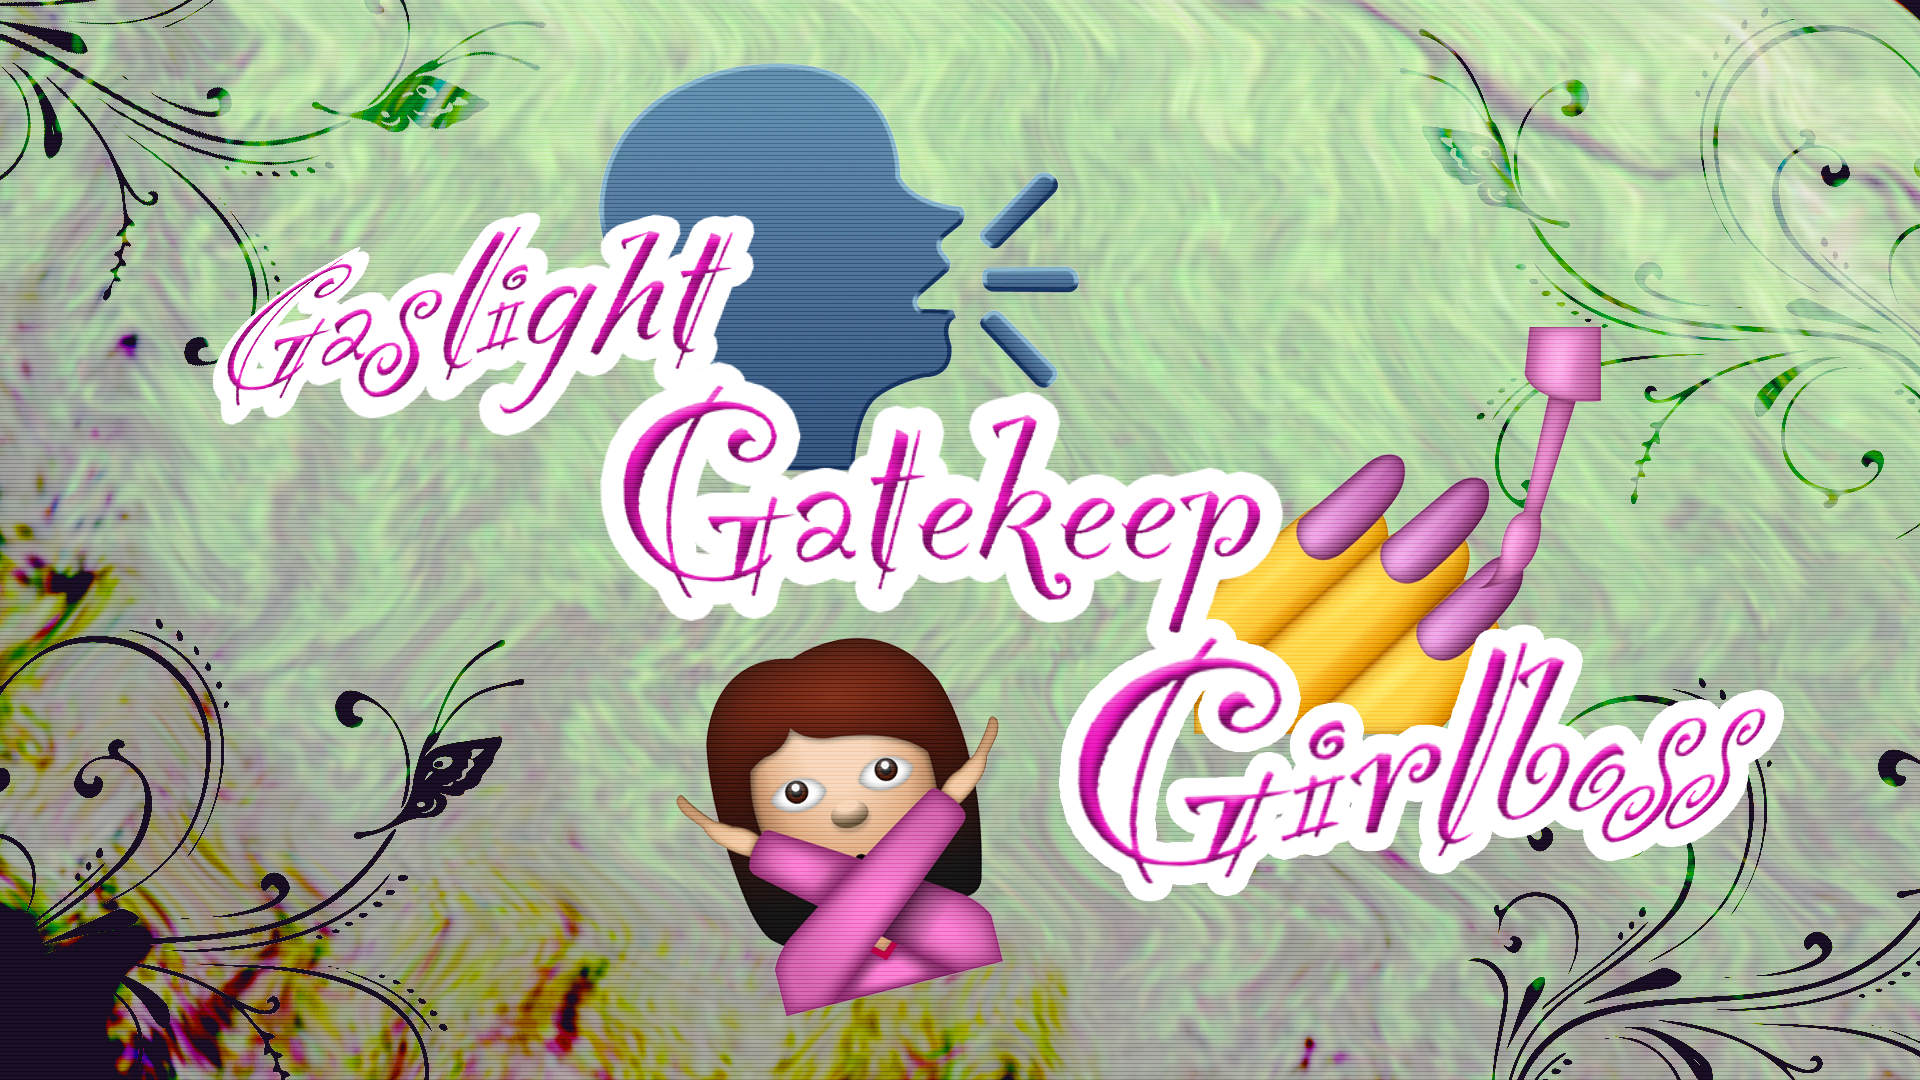 gaslight girlboss gatekeeper